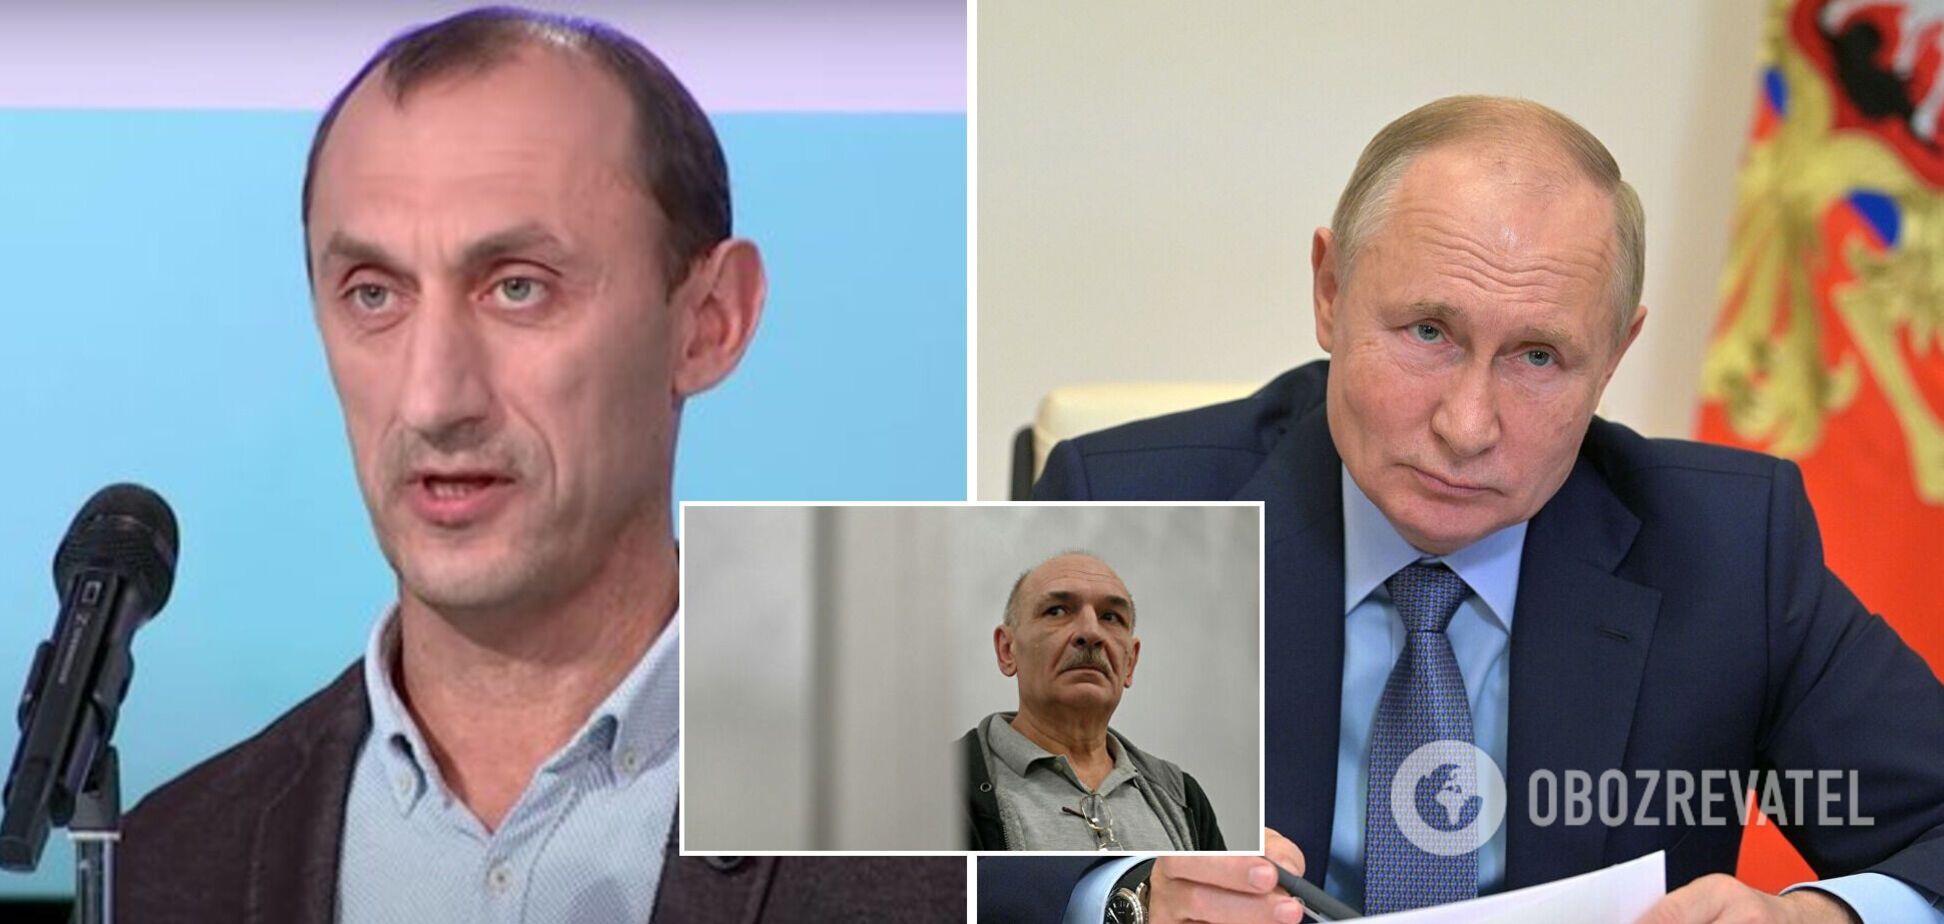 Меня уволили по звонку Путина: экс-разведчик раскрыл детали своего увольнения. Видео